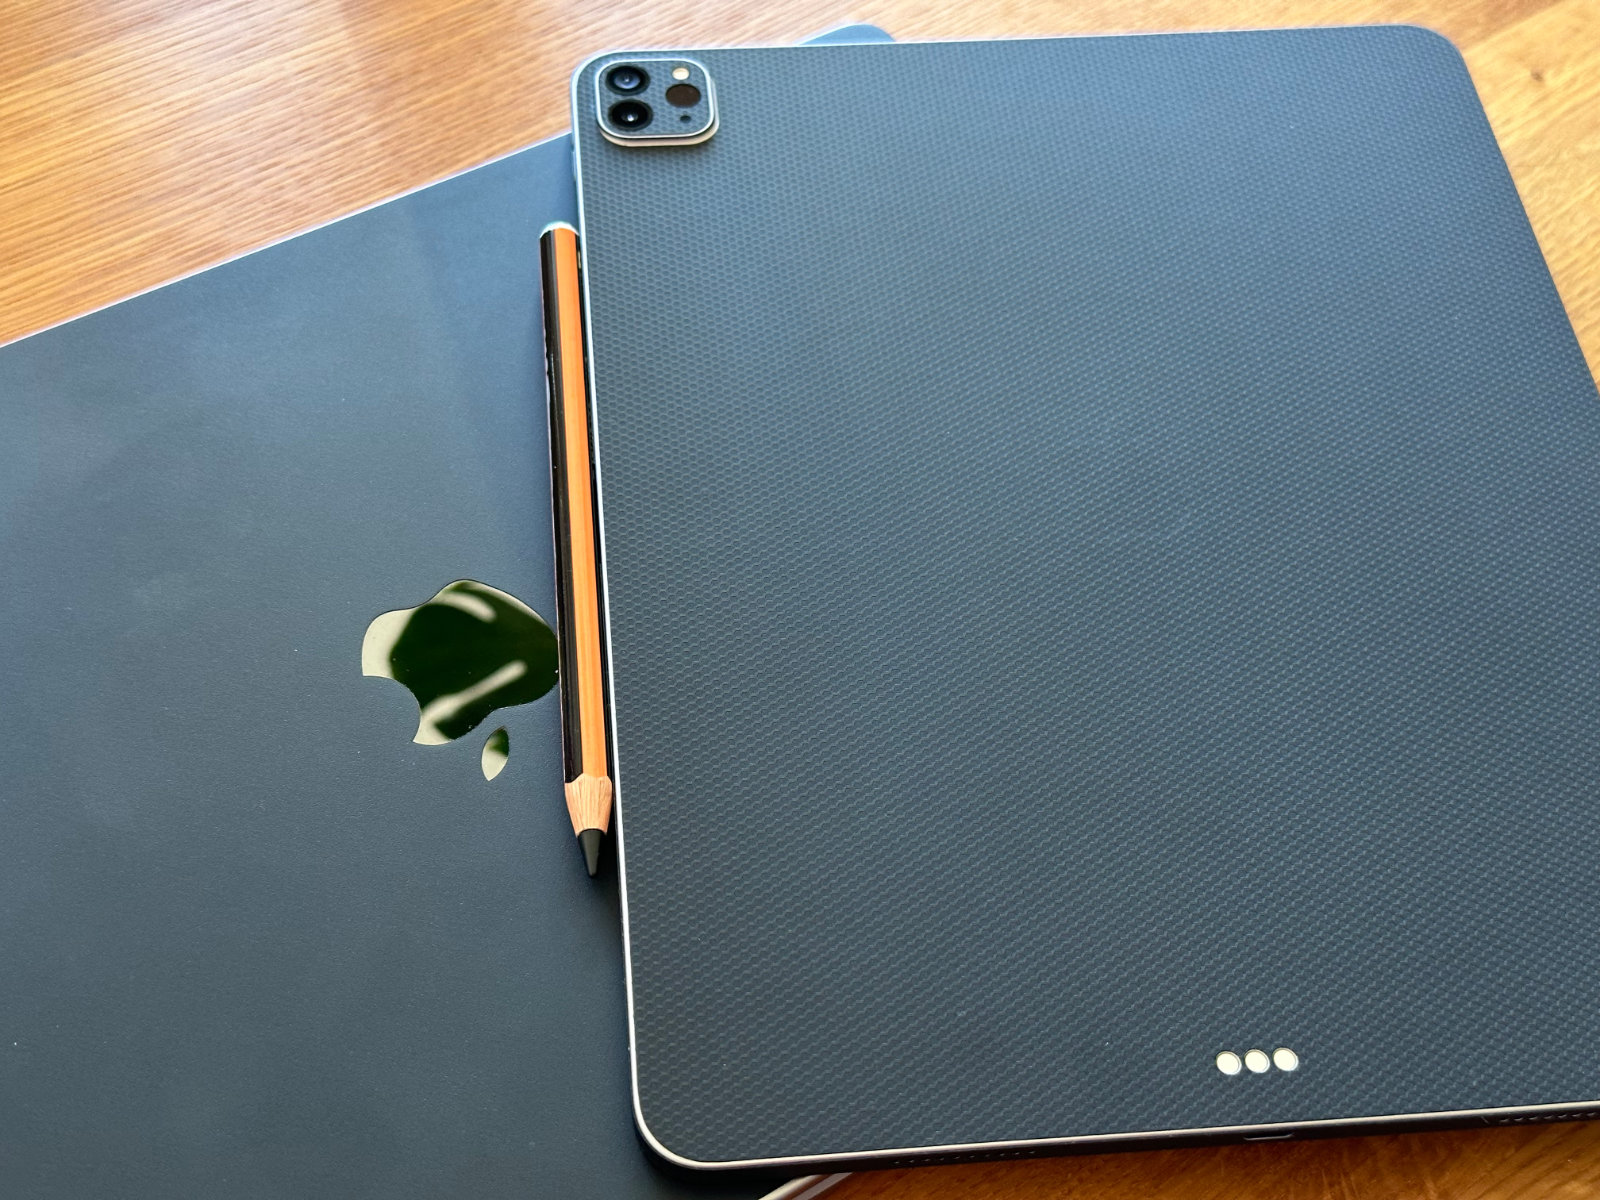 マットブラックのスキンが貼られたMacBook Pro 16インチの上に、マットブラック（Matrix）のスキンが貼られたiPad Pro 12.9インチが背面を上にして置かれている。iPadにはオレンジと黒のスキンでデコったApple Pencilがくっついている